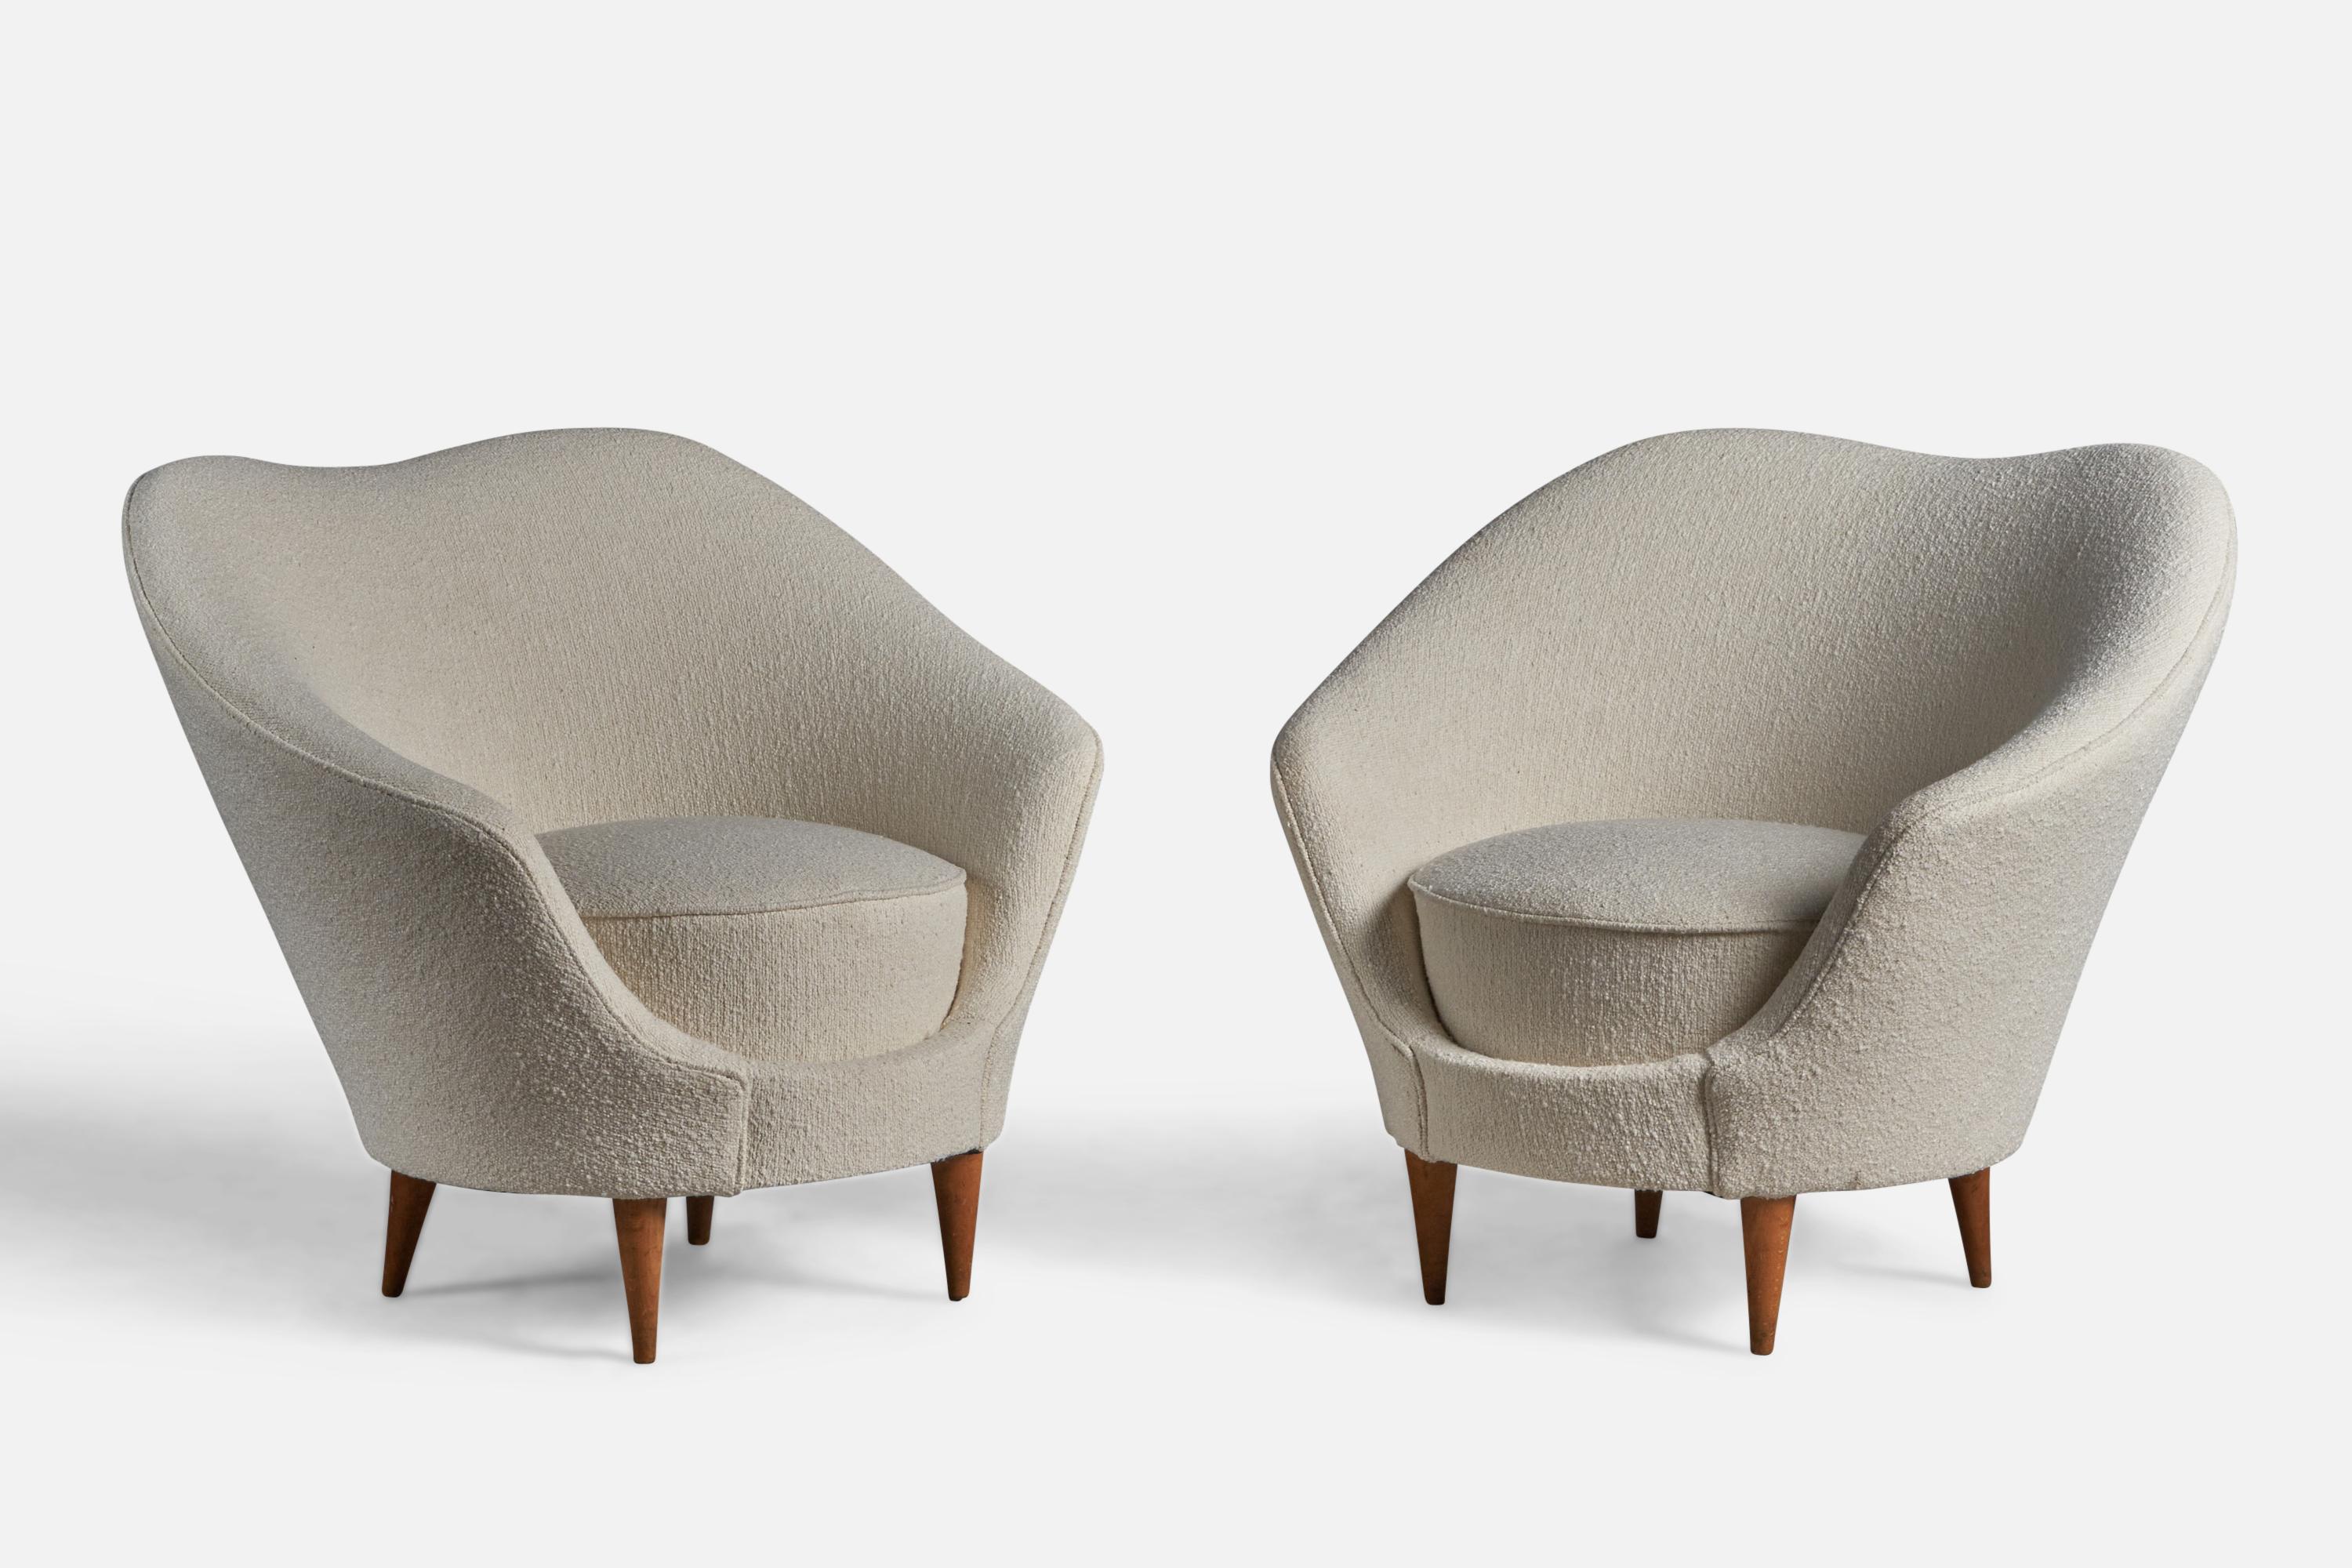 Ein Paar Sessel aus Nussbaumholz und weißem Bouclé-Stoff, entworfen von Federico Munari und hergestellt von ISA Bergamo, Italien, 1950er Jahre.

15,5